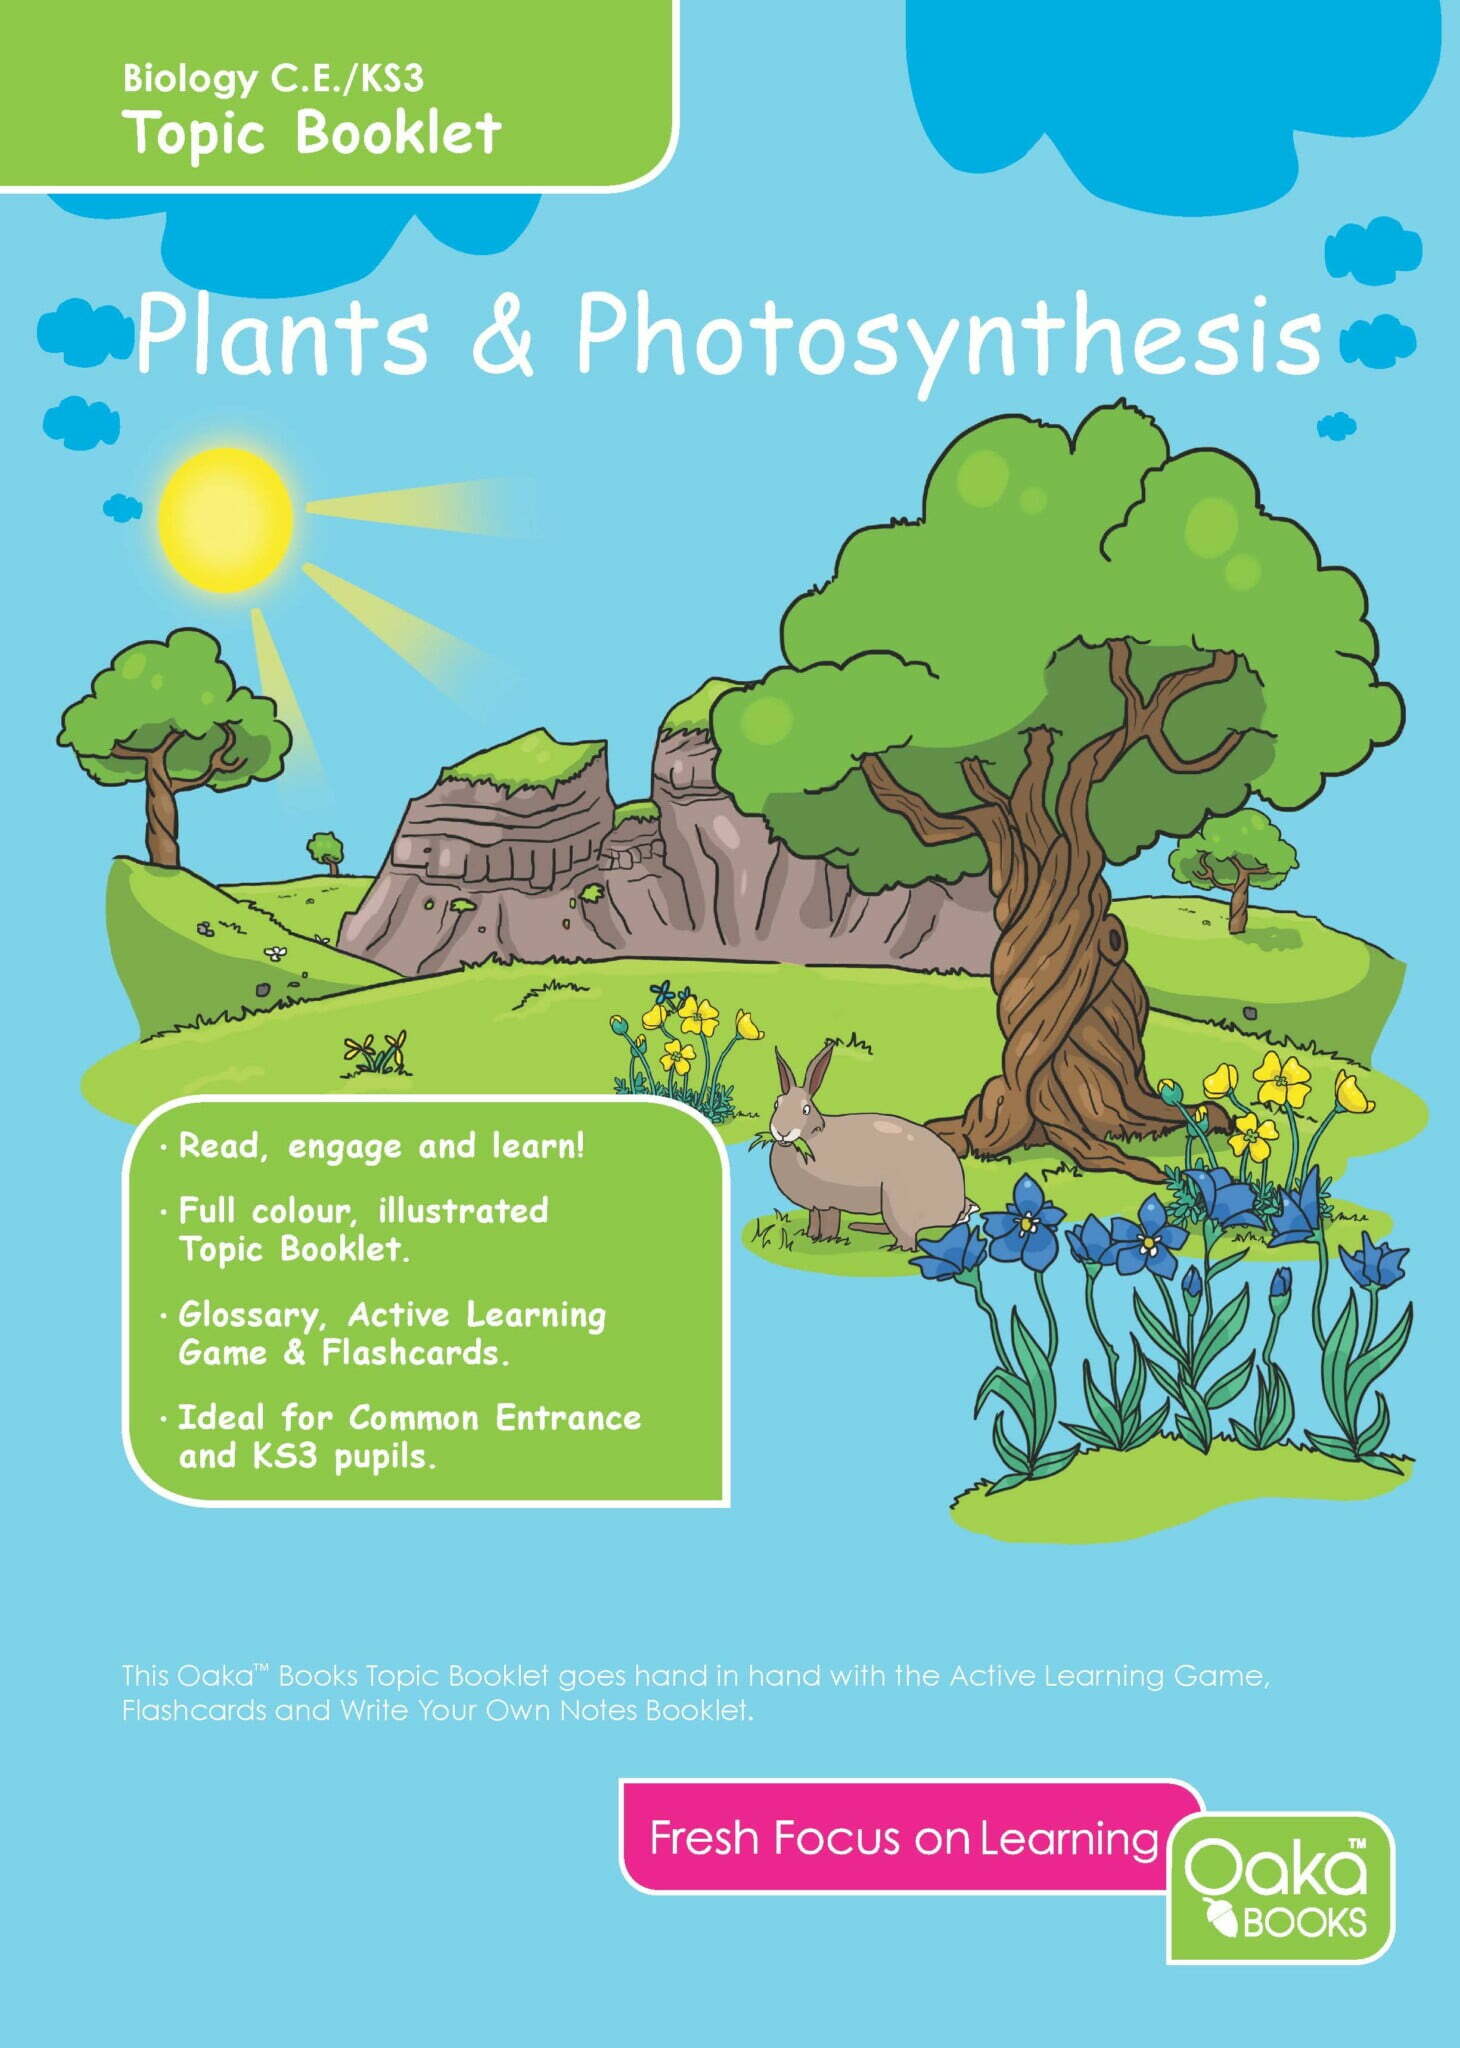 CE/KS3 Biology: Plants & Photosynthesis